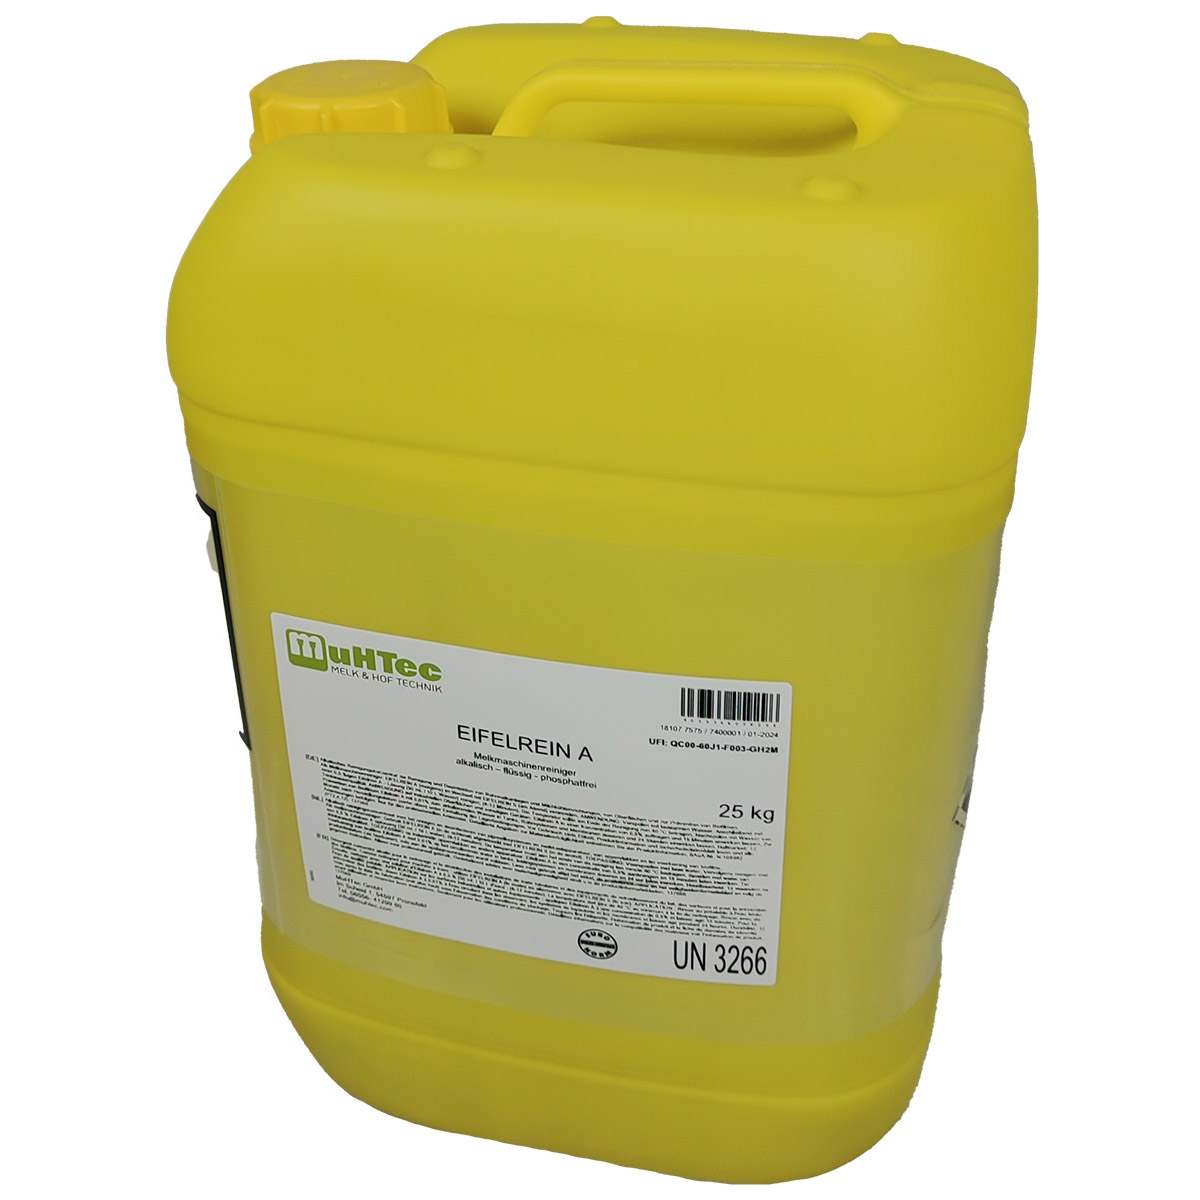 Kunststoff Dosierpumpe, weiß: Pumpe zum Dosieren für  Desinfektionsmittelflaschen, passend für 0,5- oder 1-Liter-Flaschen, als  Zubehör kaufen.